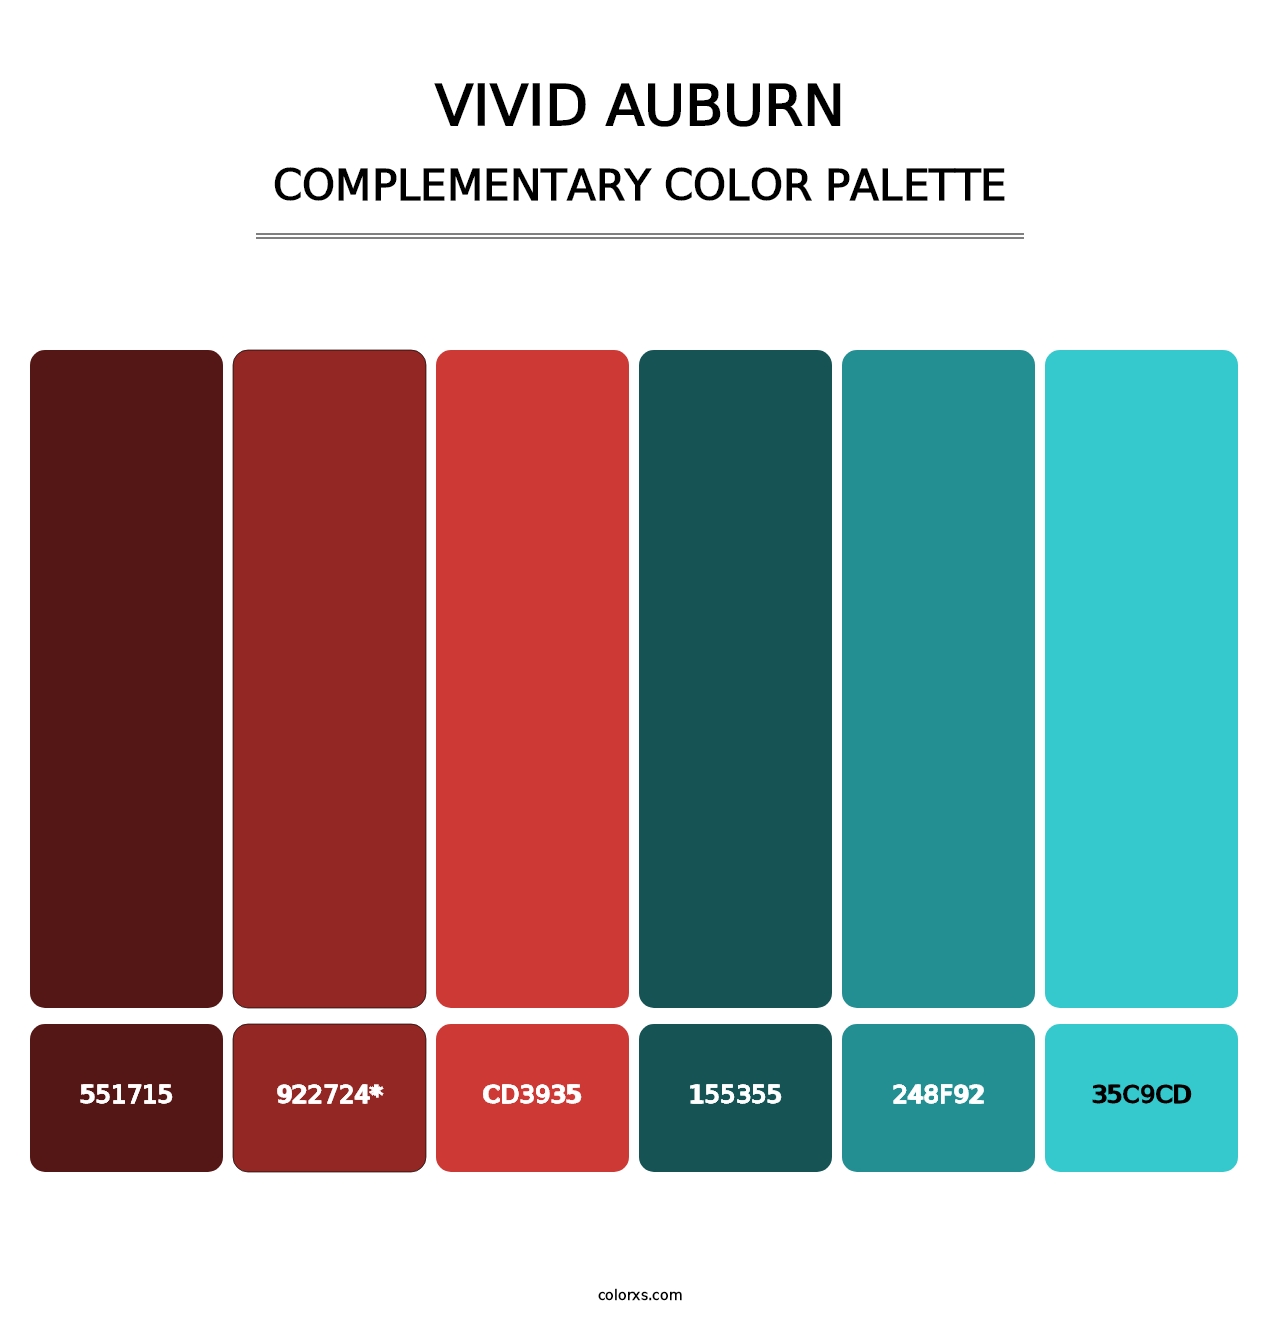 Vivid Auburn - Complementary Color Palette